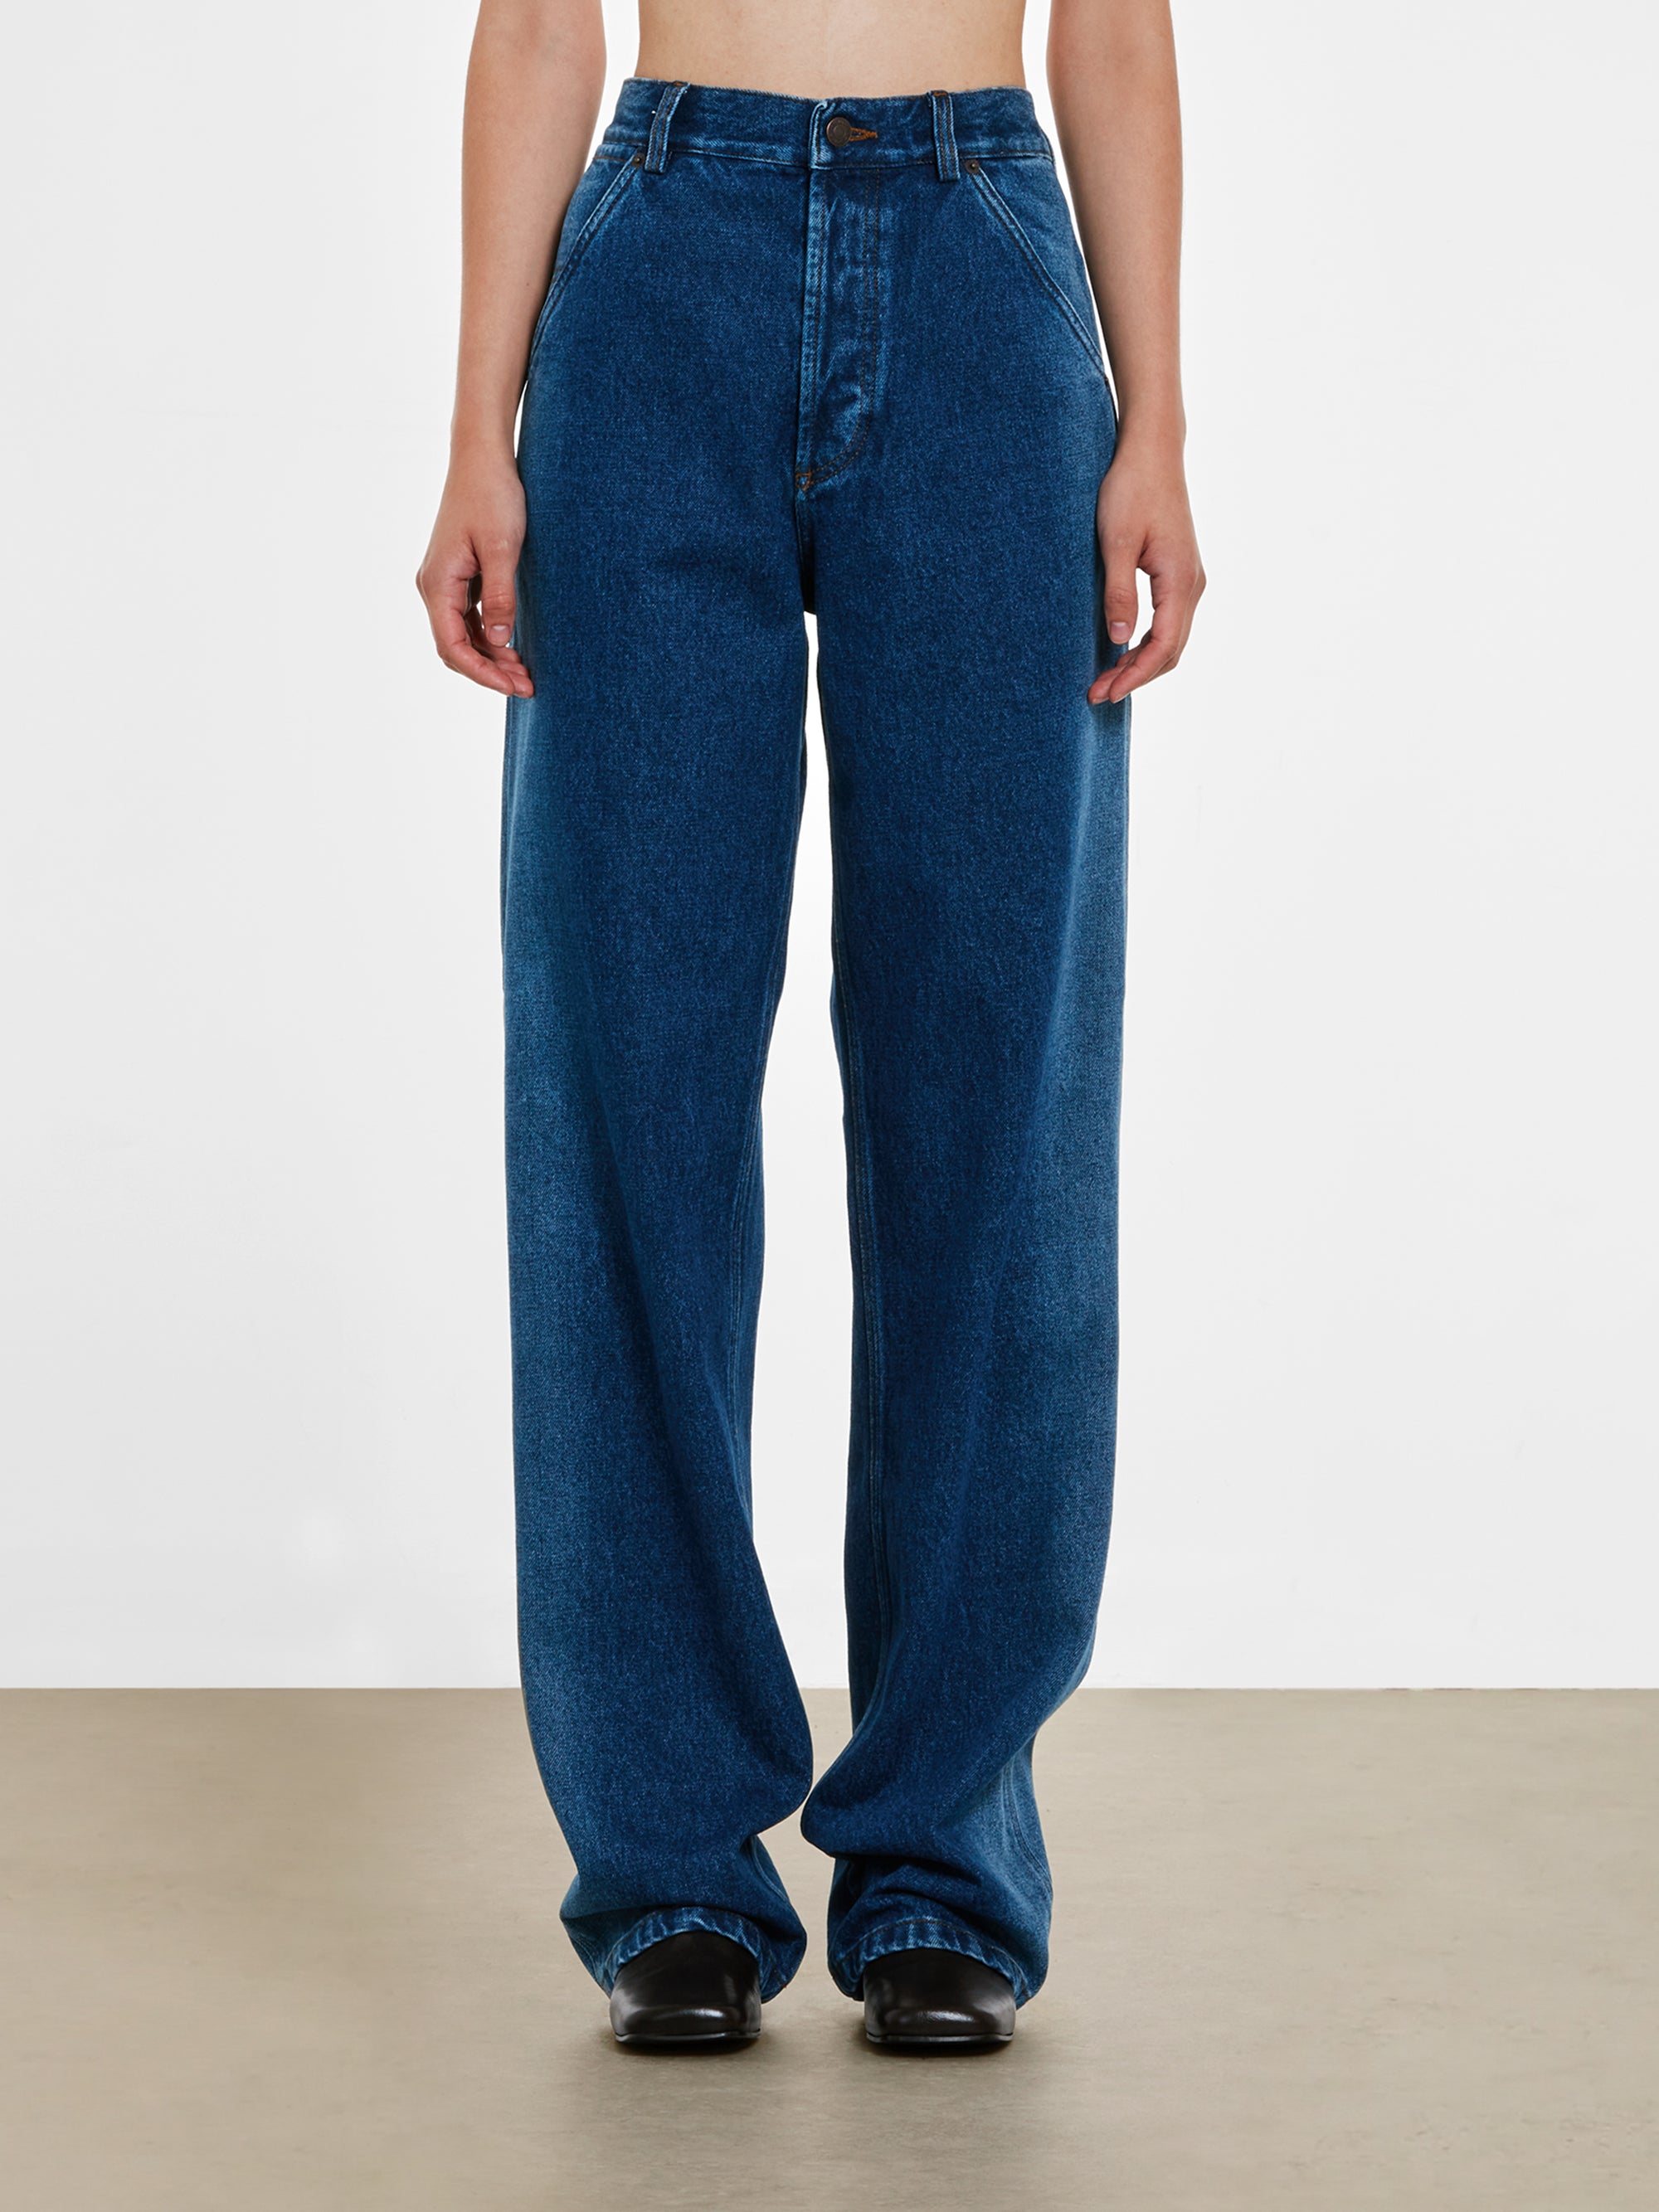 Dries Van Noten - Women’s Indigo Faded Jeans - (Indigo) view 1